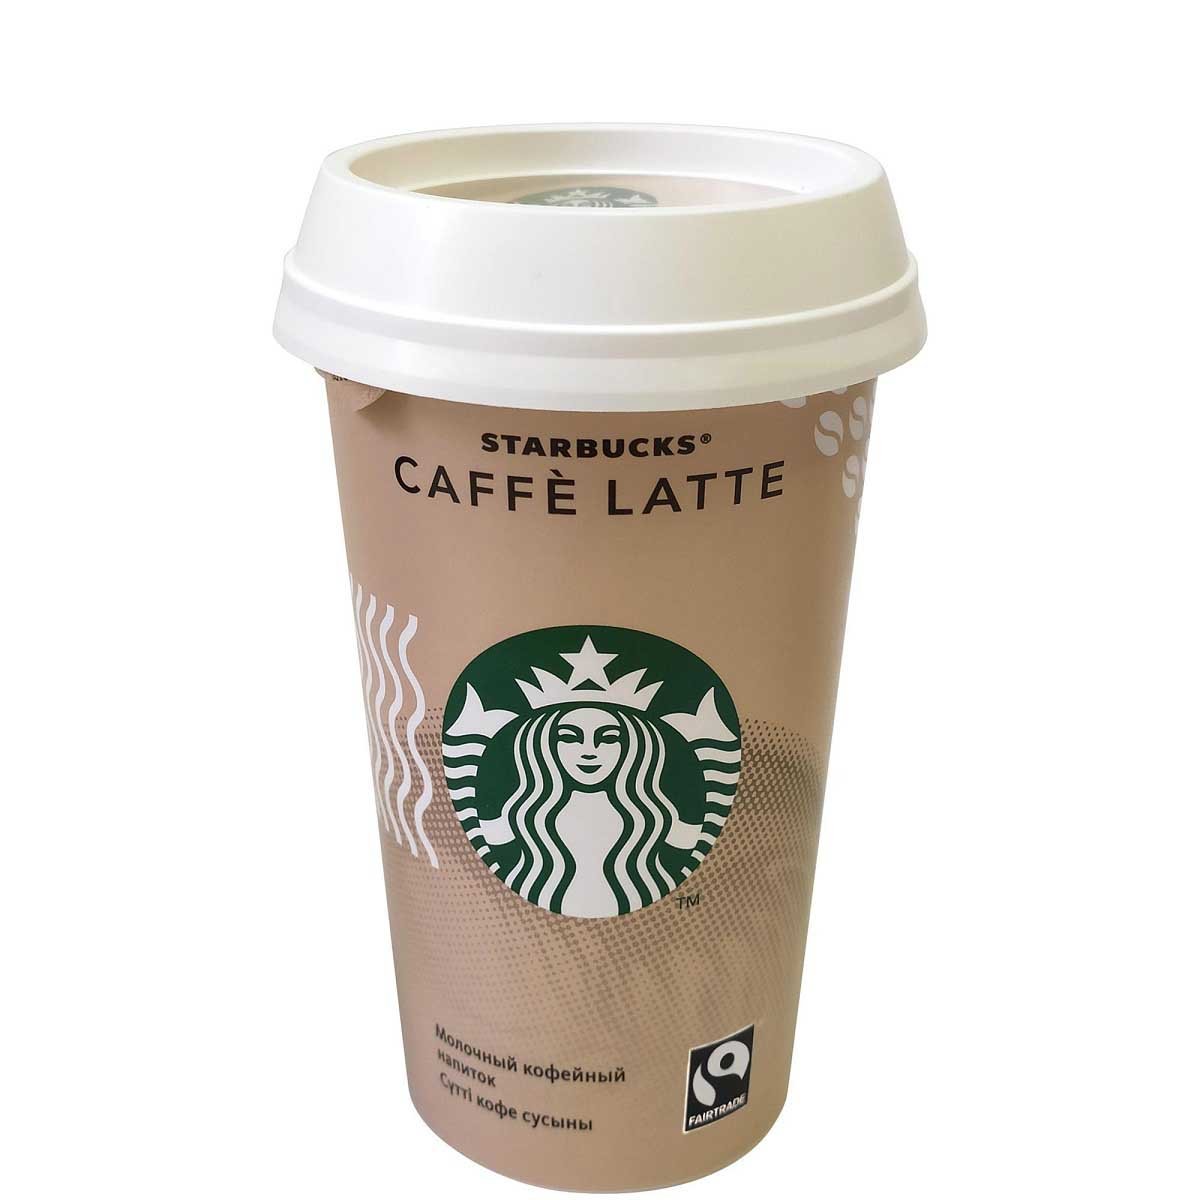 Купить готовый кофе. Старбакс молочный кофейный напиток. Starbucks Caffe Latte 220 мл. Напиток Starbucks Latte 220мл. Напиток Caffe Latte Starbucks молочный кофейный.